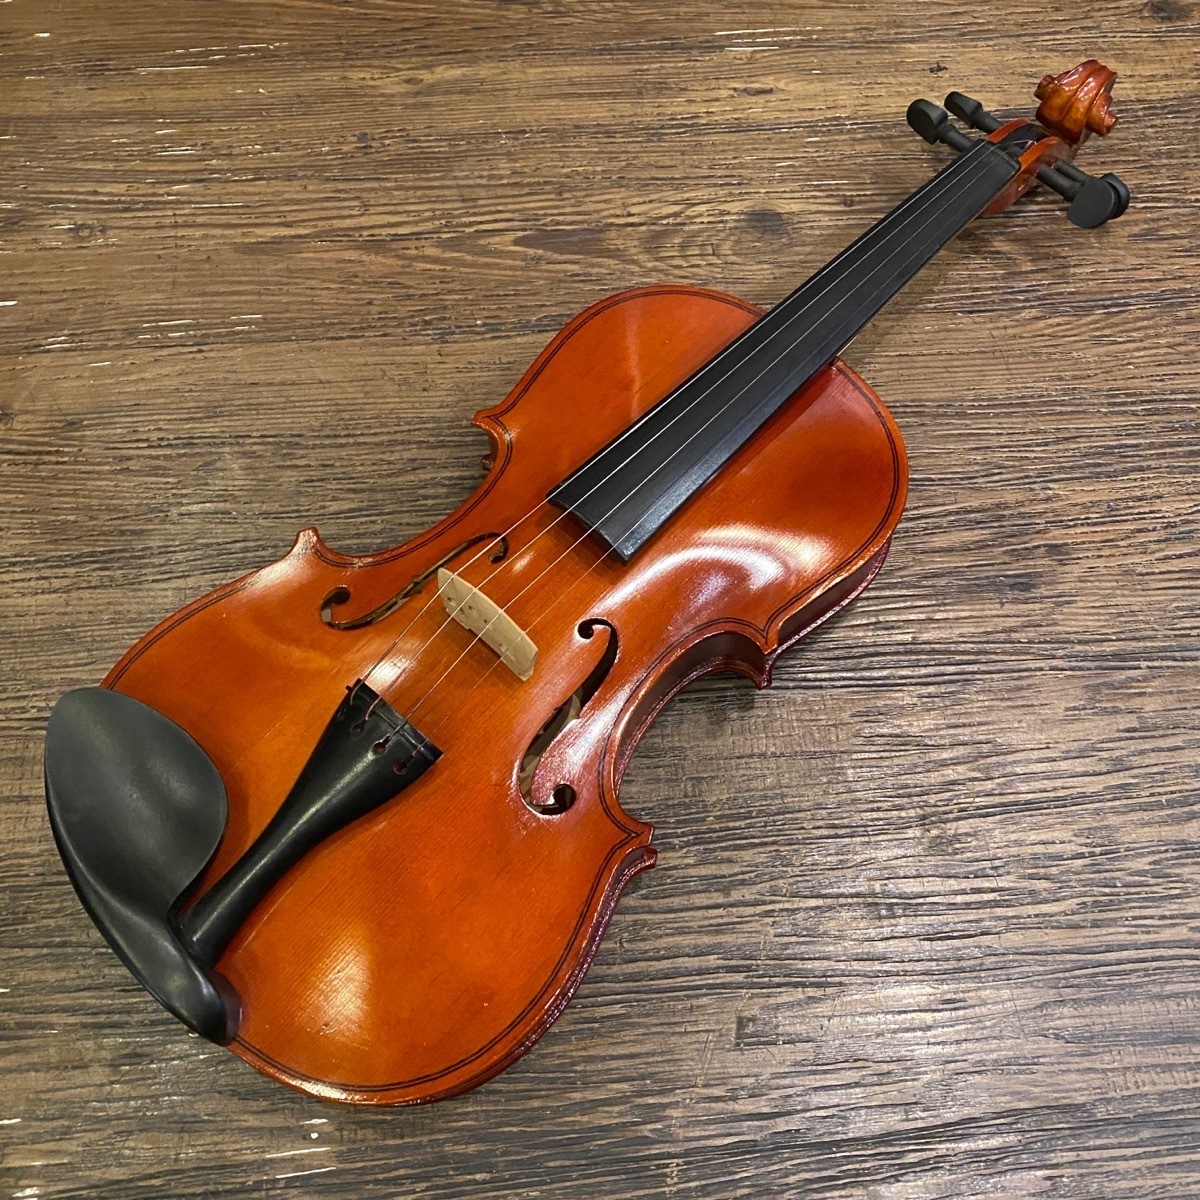 激安特価 J.J.Violin -GrunSound-x369- バイオリン Violin 4/4 JV-100 バイオリン